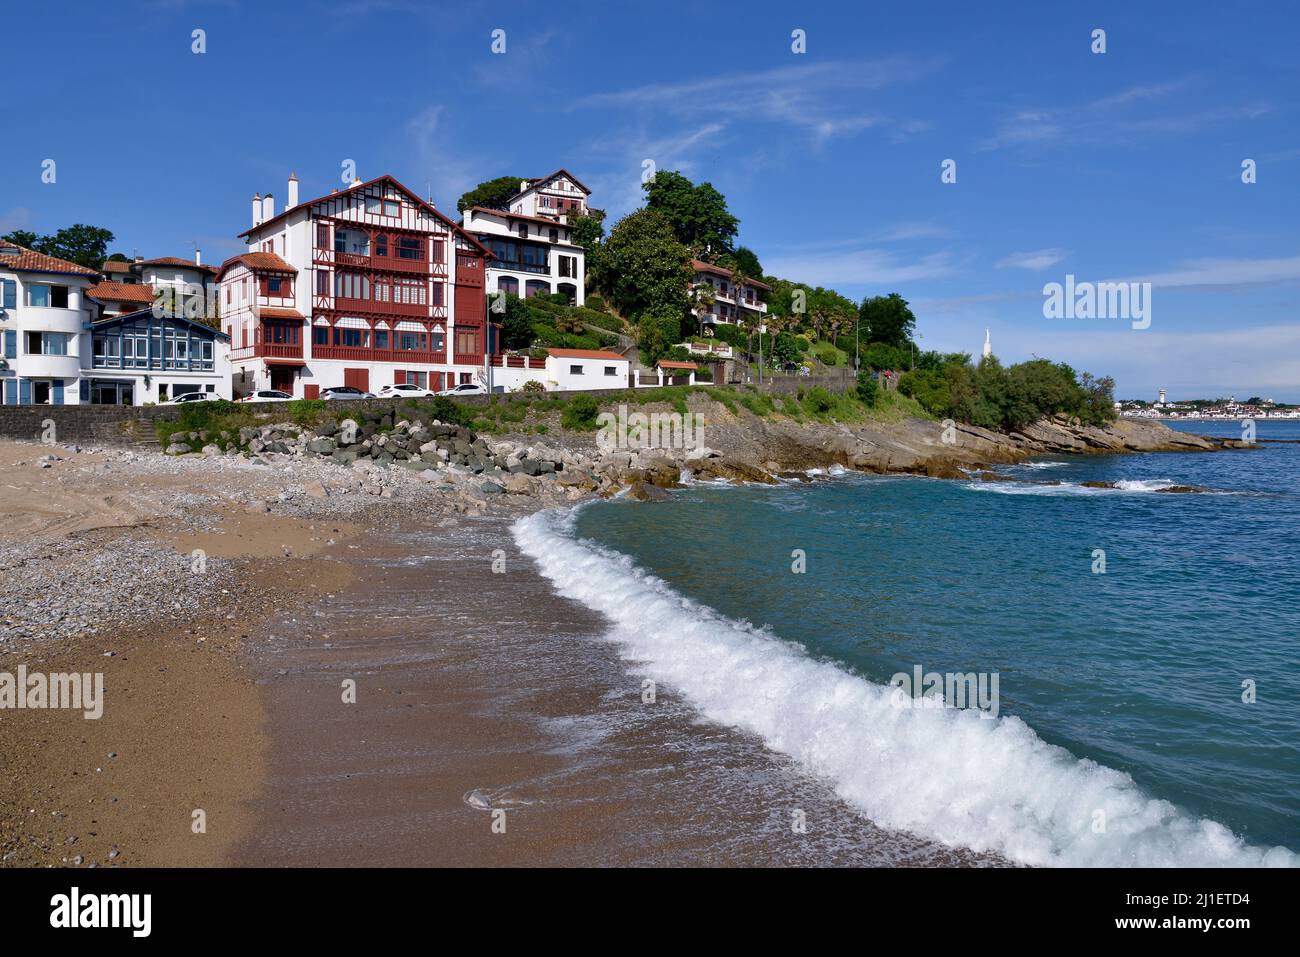 Faites une vague sur la plage de Ciboure, commune bordant Saint-Jean-de-Luz dans le département des Pyrénées-Atlantiques dans le sud-ouest de la France Banque D'Images